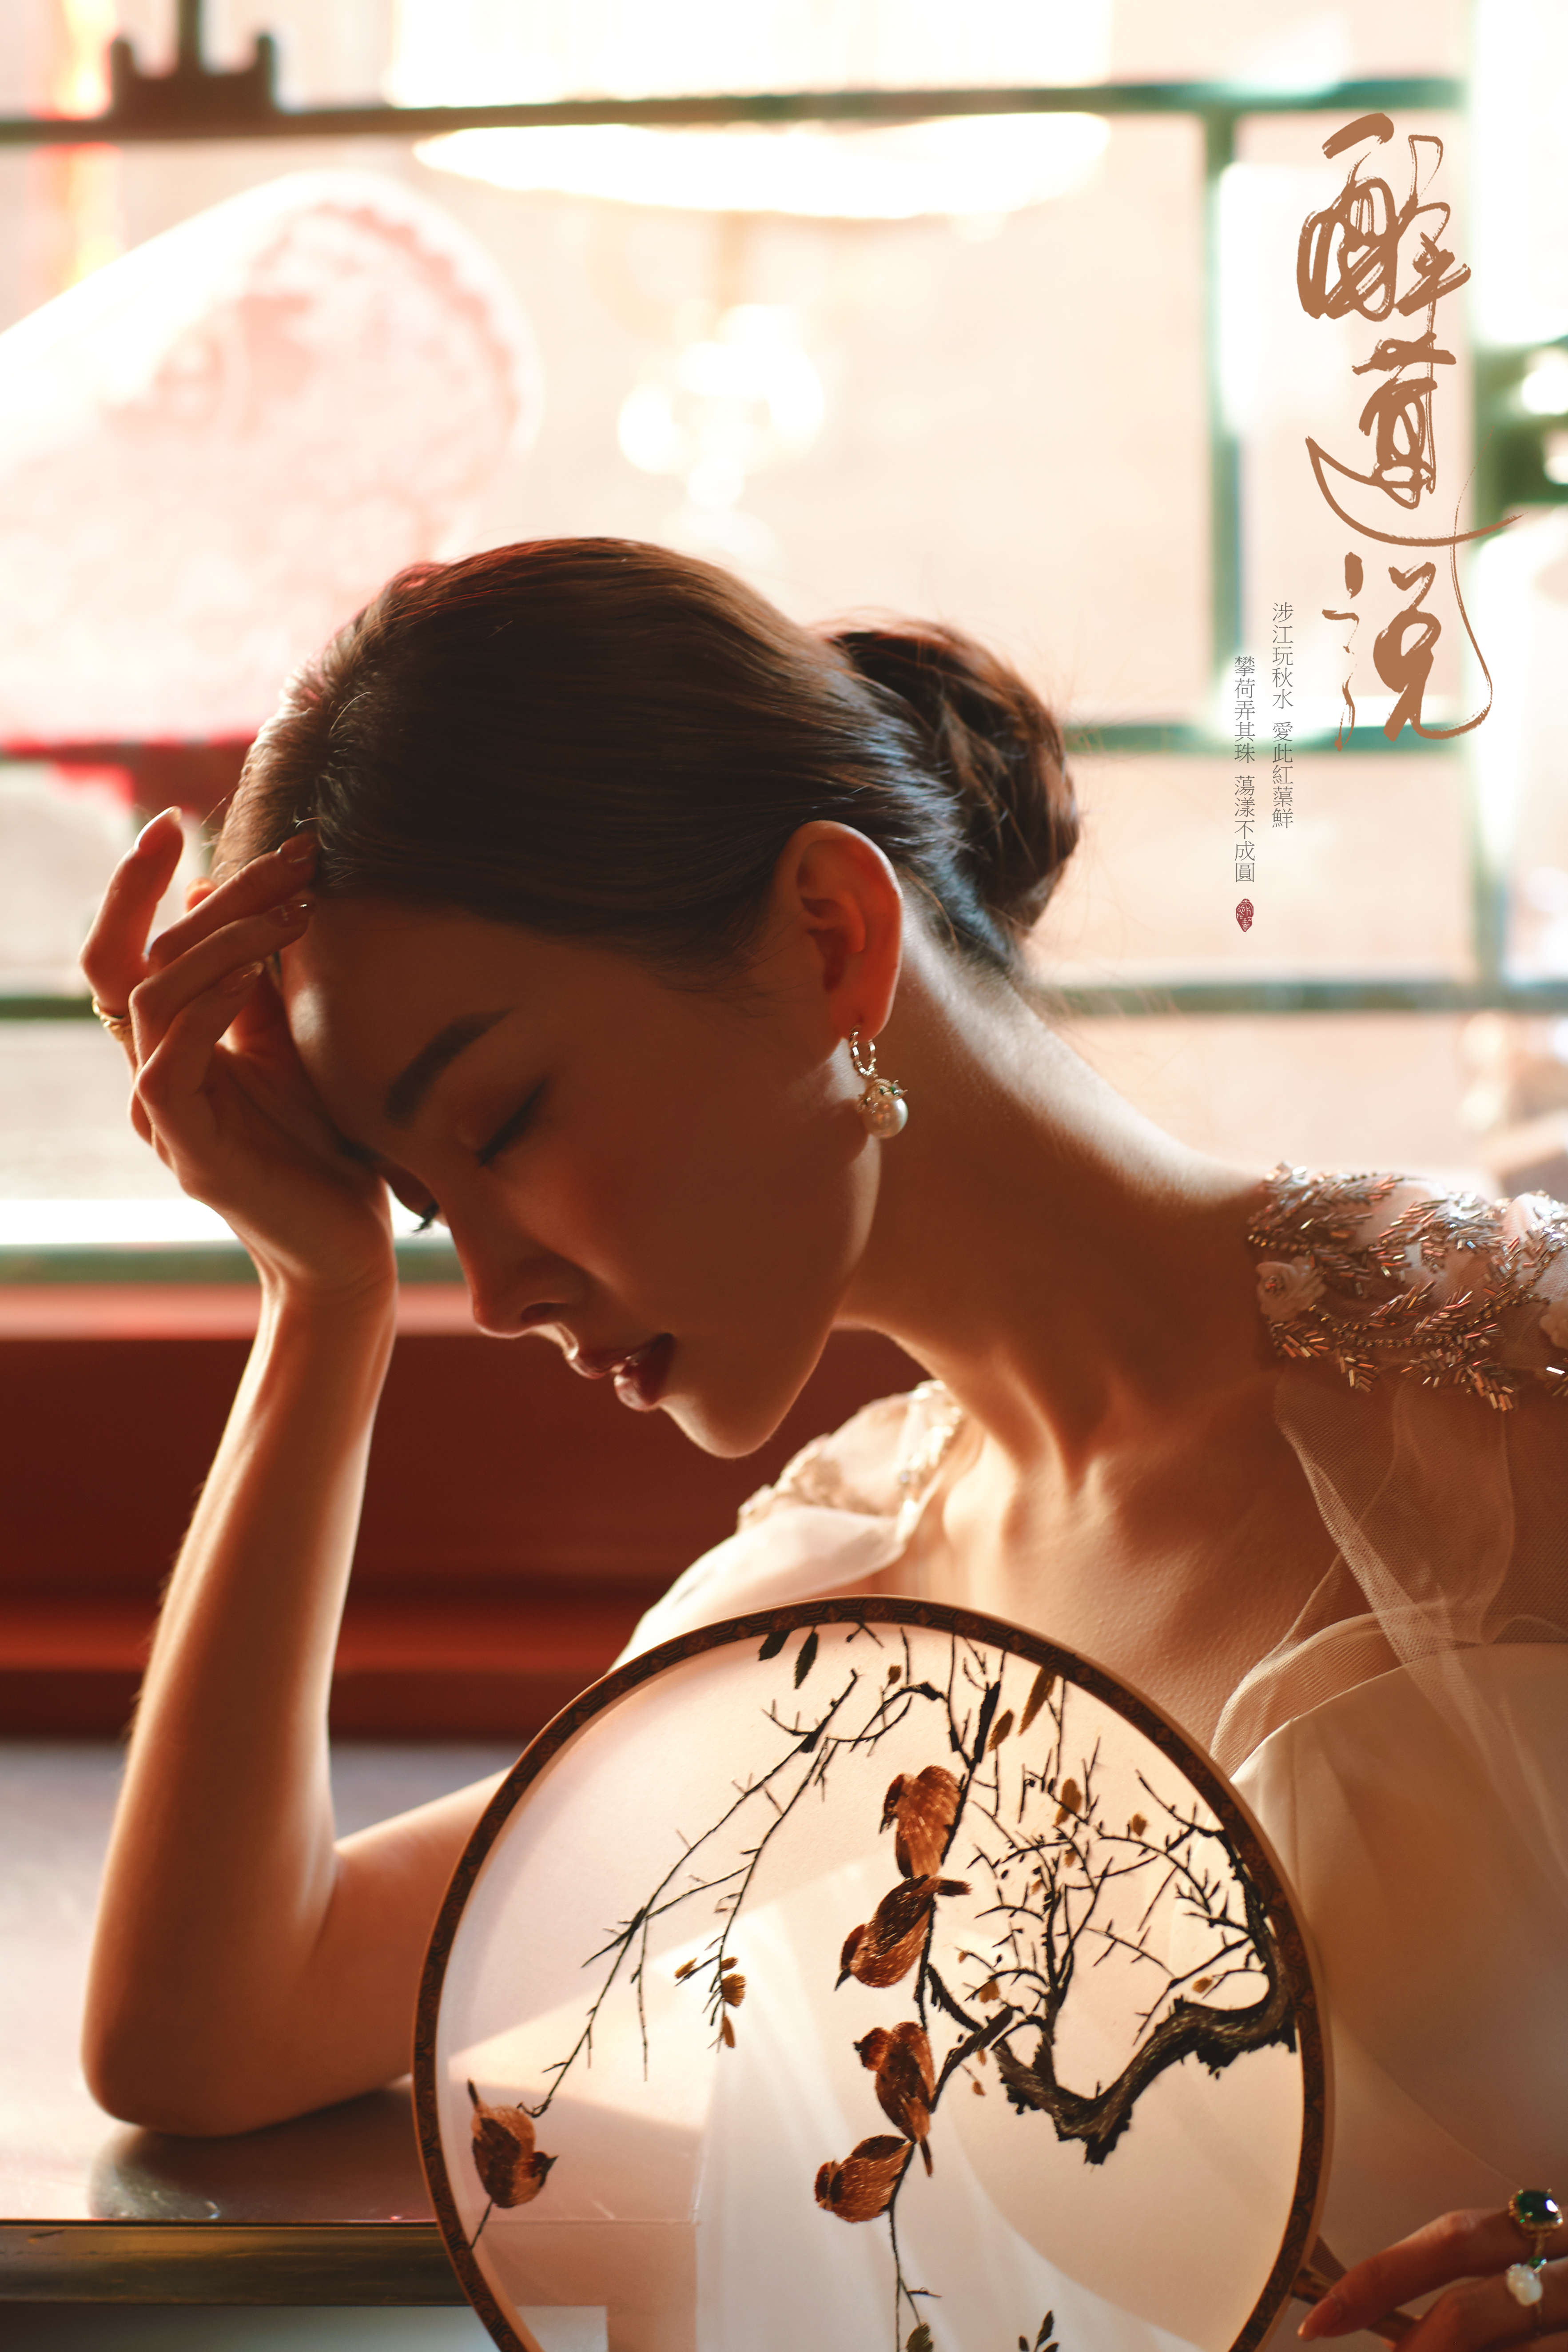 南京婚纱摄影外景推荐有哪些 大约需要花费多少钱